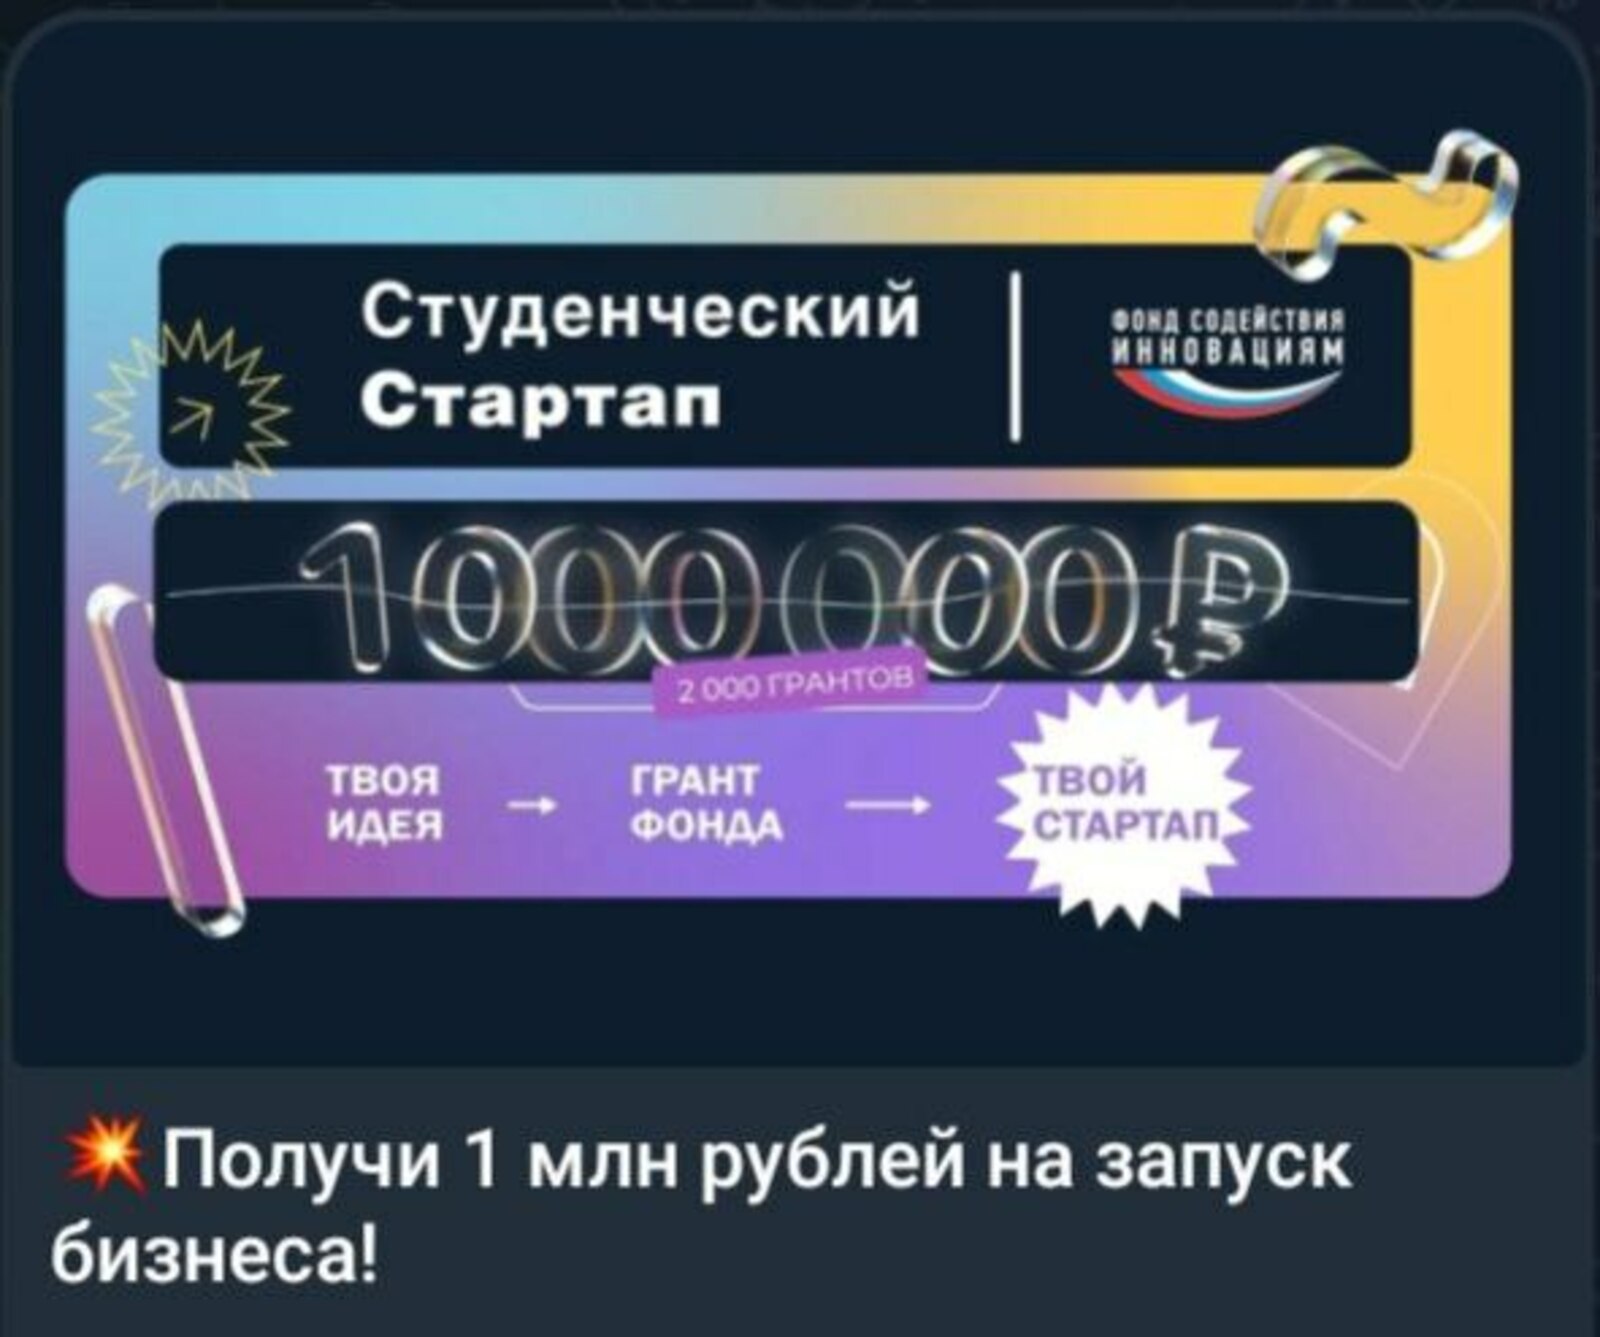 Студенты Башкирии смогут получить миллион рублей на запуск бизнеса